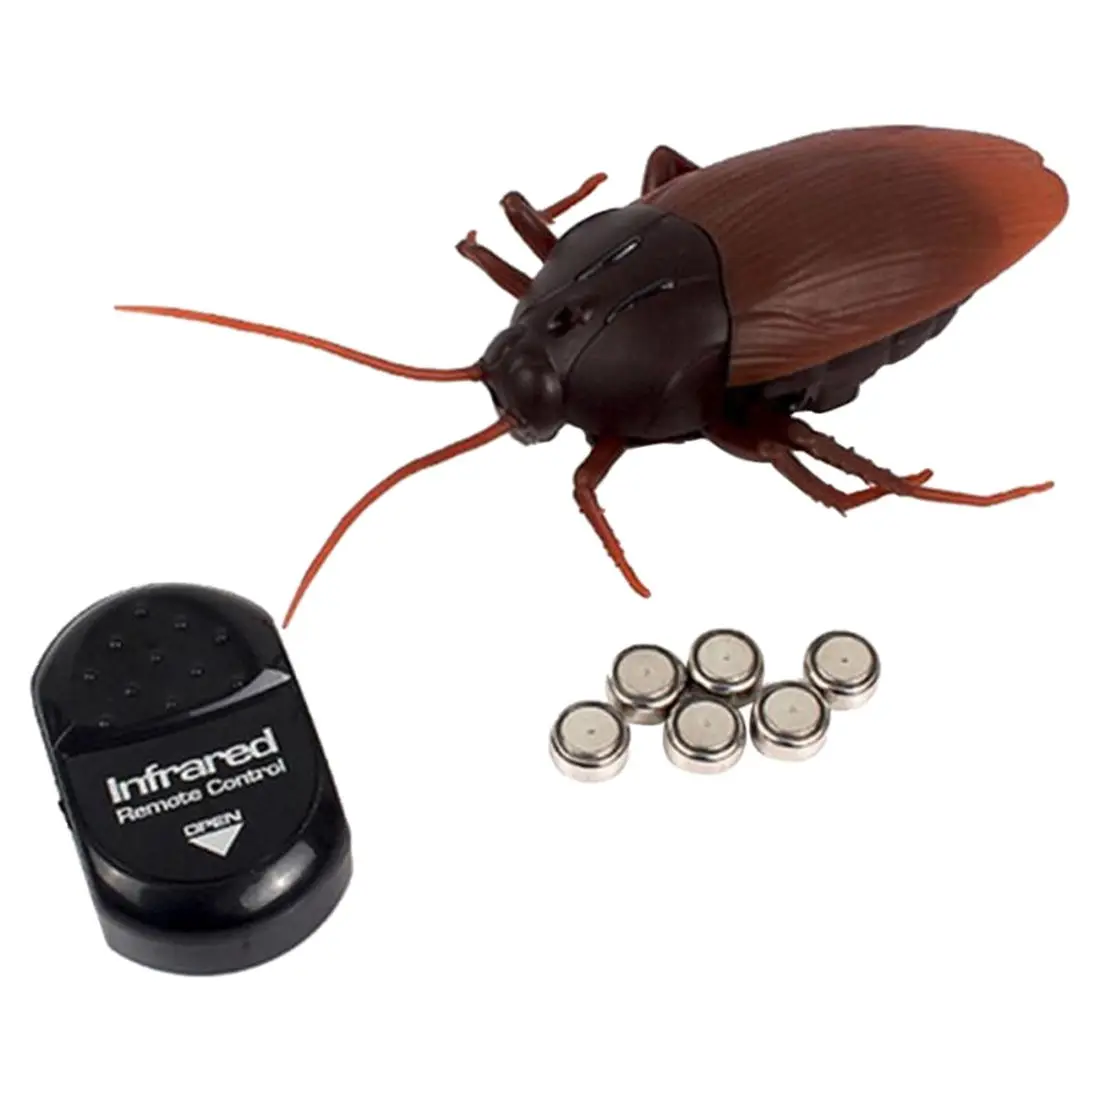 ABWE Лучшая Топ инфракрасный пульт дистанционного управления макет поддельные муравьи/тараканы/пауки RC игрушки для детей, темно-коричневый - Цвет: Dark Brown